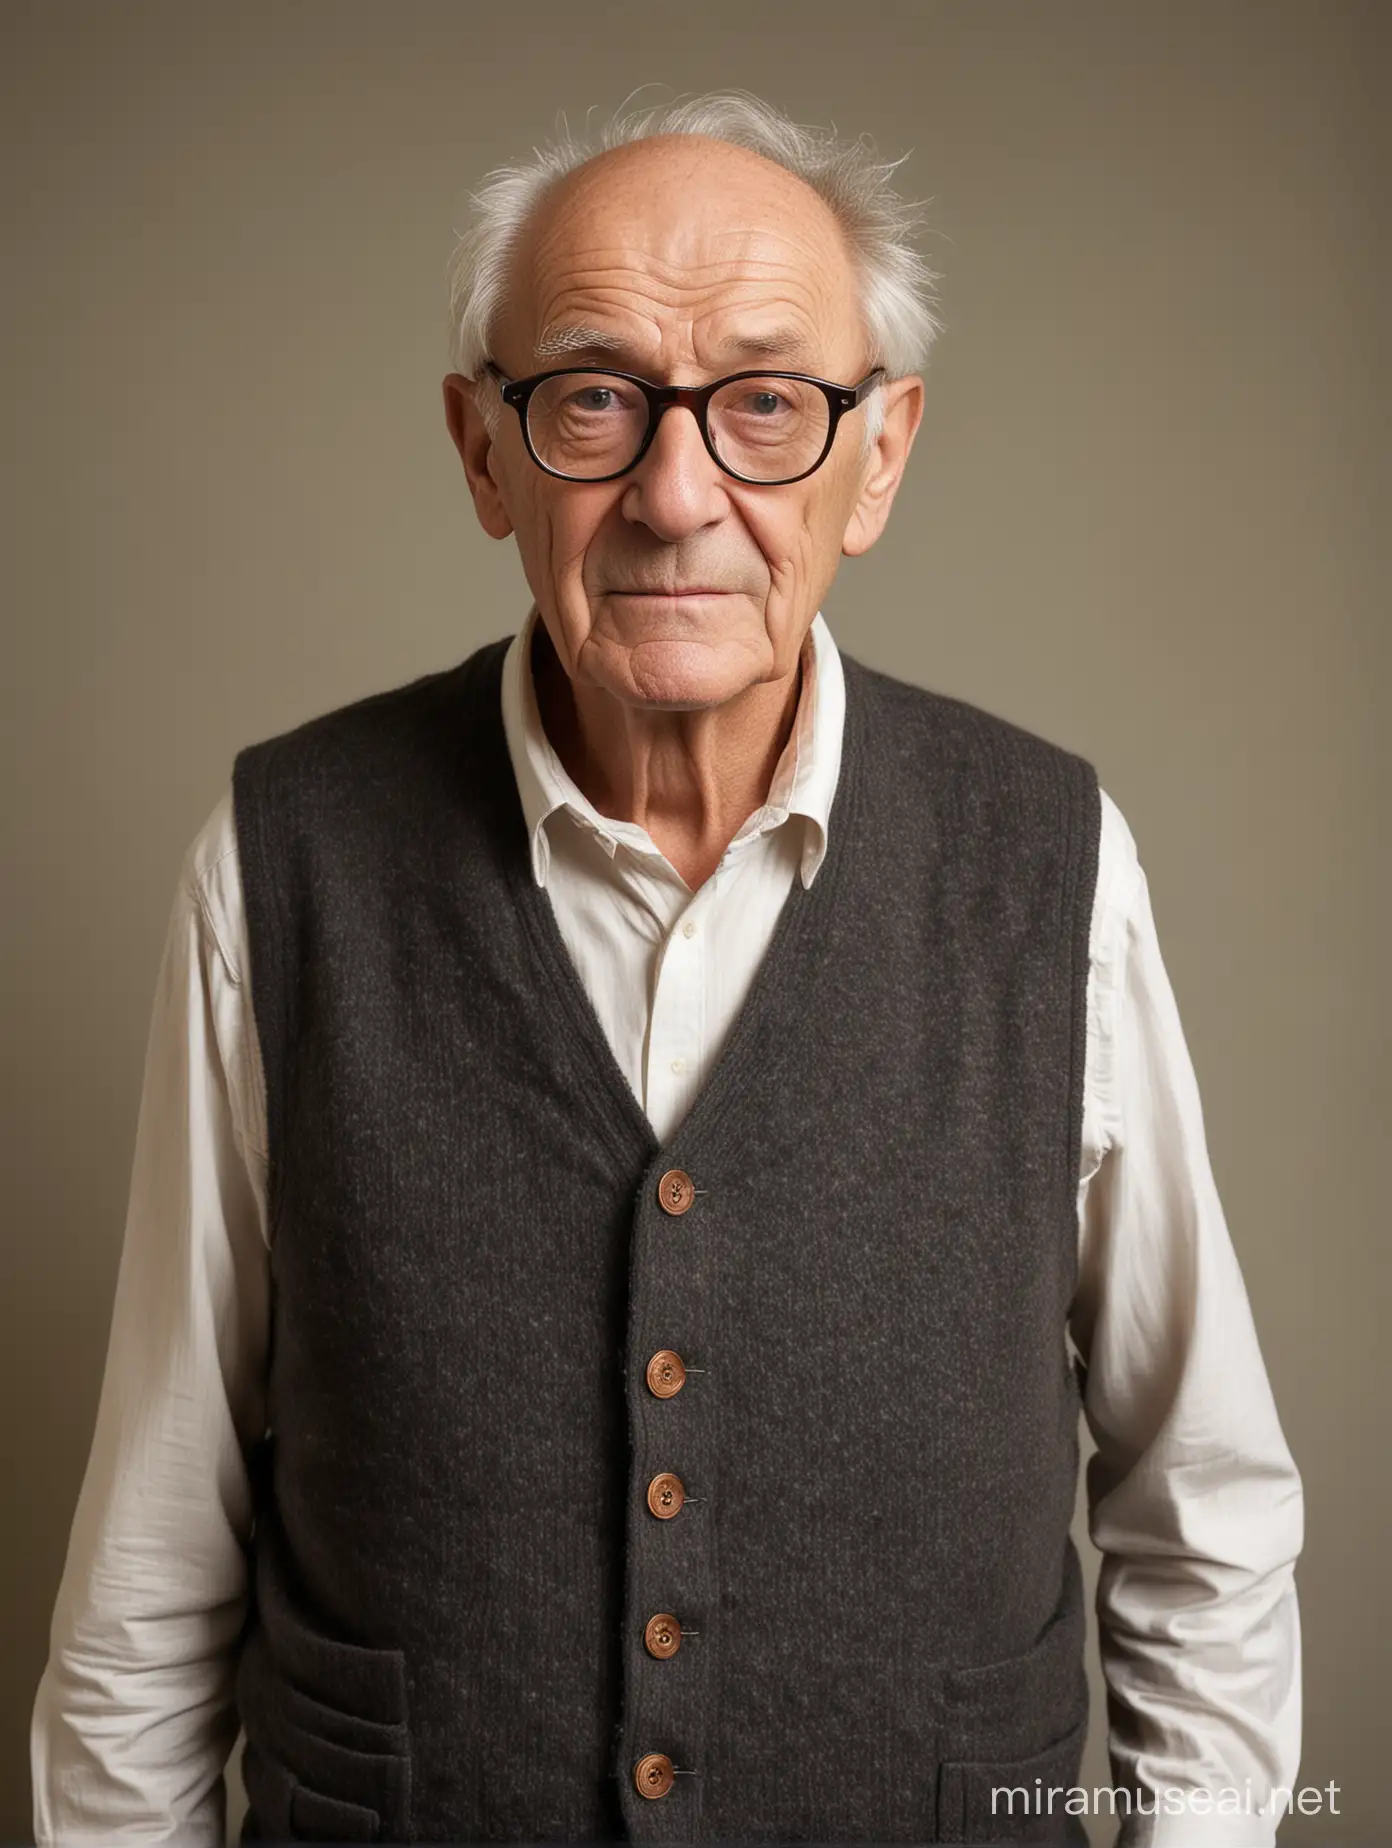 Elderly Gentleman in Academic Attire with Vest and Scapular